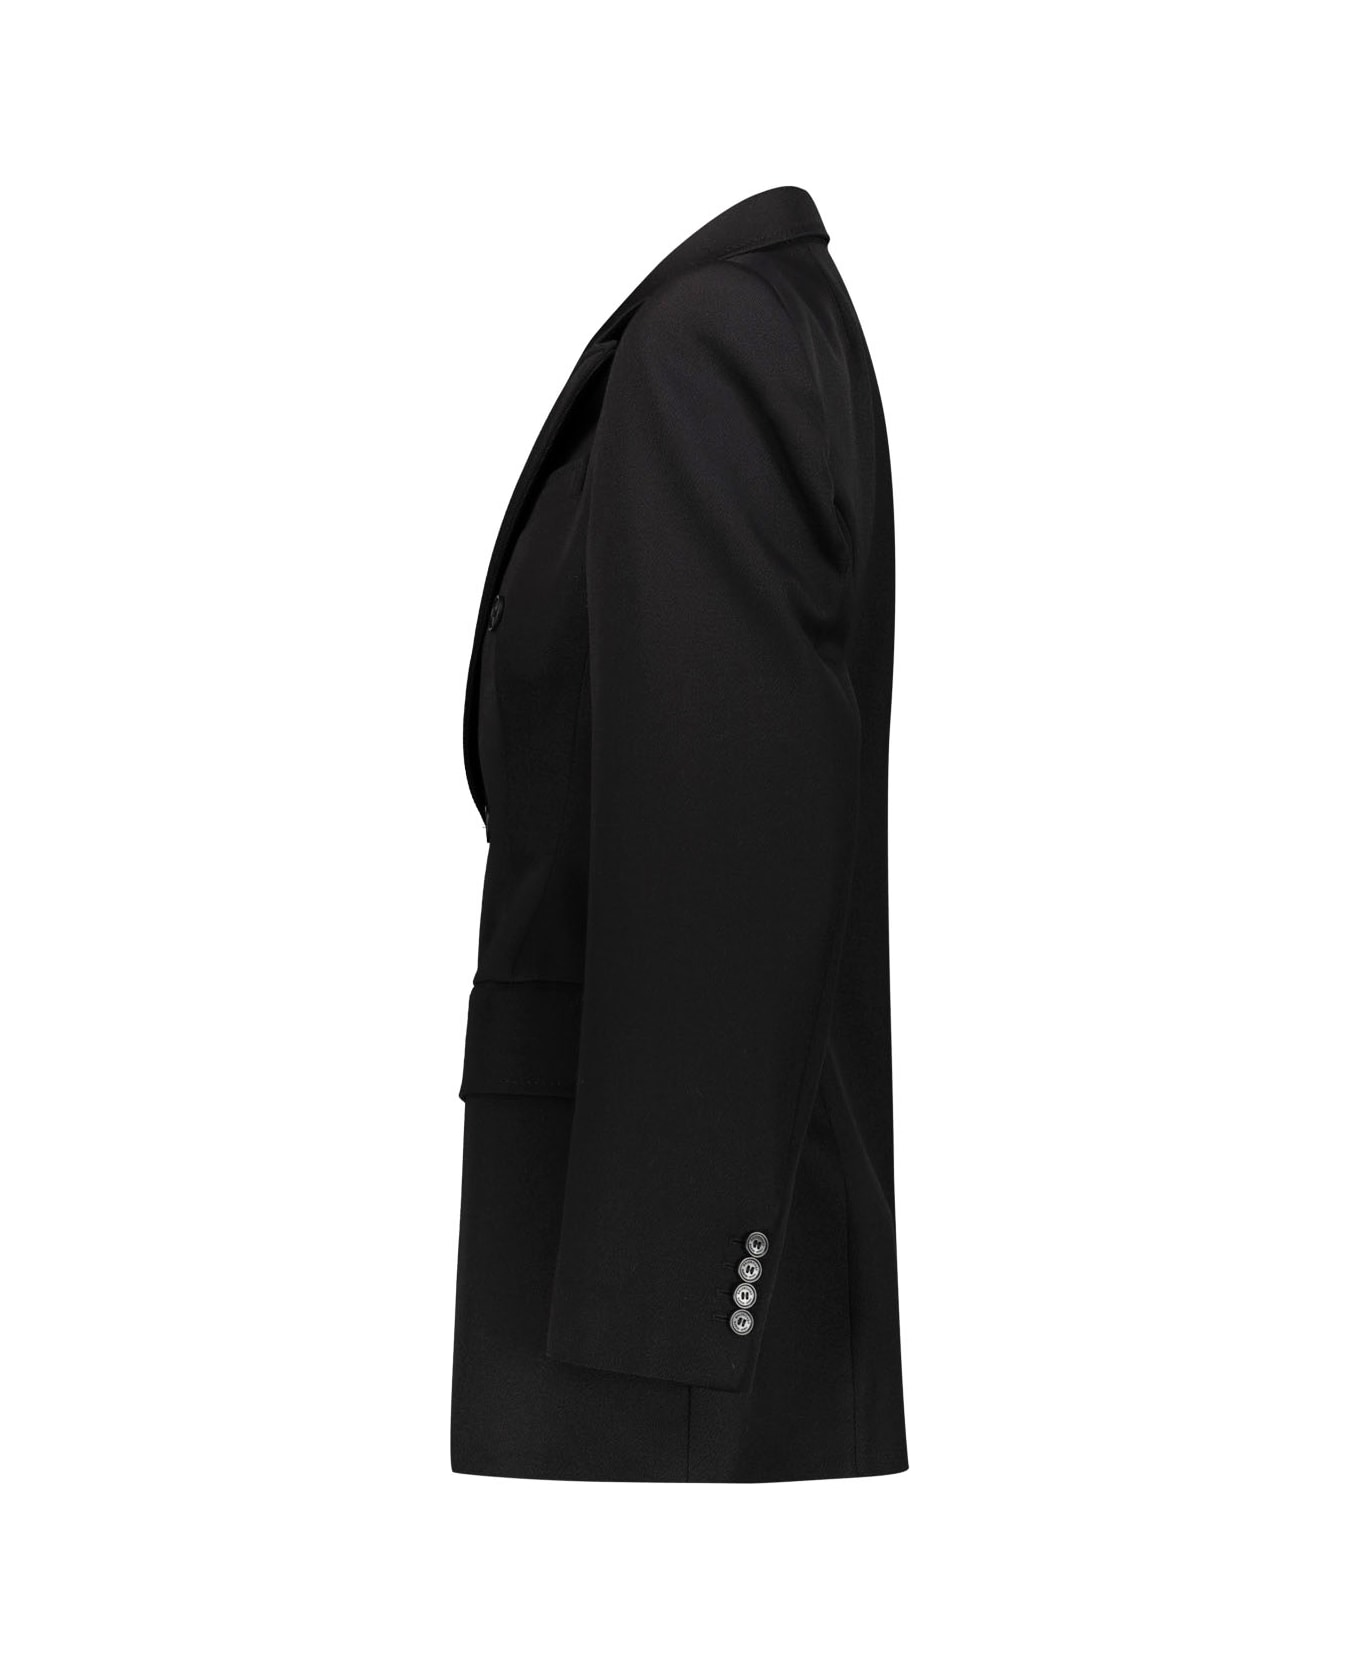 Balenciaga Garde-robe Hourglass Double Brested Jacket